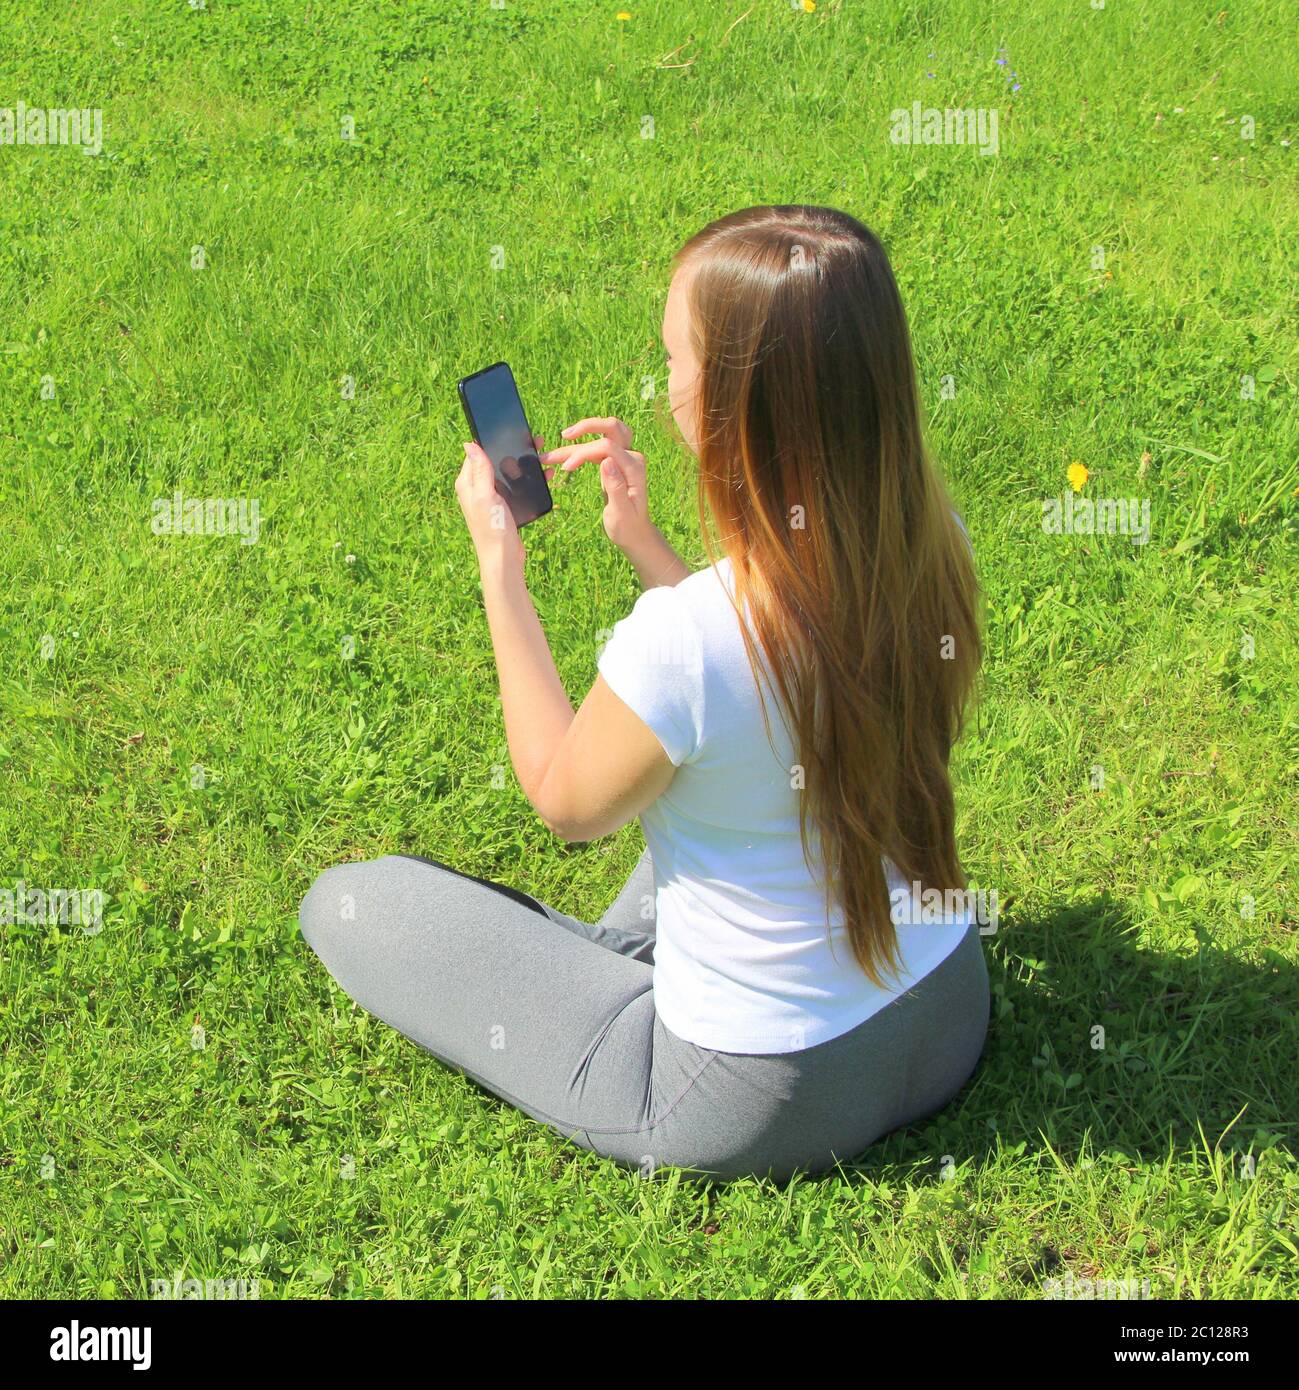 Ein junges schönes Mädchen von europäischem Aussehen in einem weißen T-Shirt mit langen blonden Haaren sitzt auf grünem Gras, auf dem Rasen mit einem Handy in den Händen, kippt durch soziale Netzwerke, arbeitet im Telefon. Stockfoto